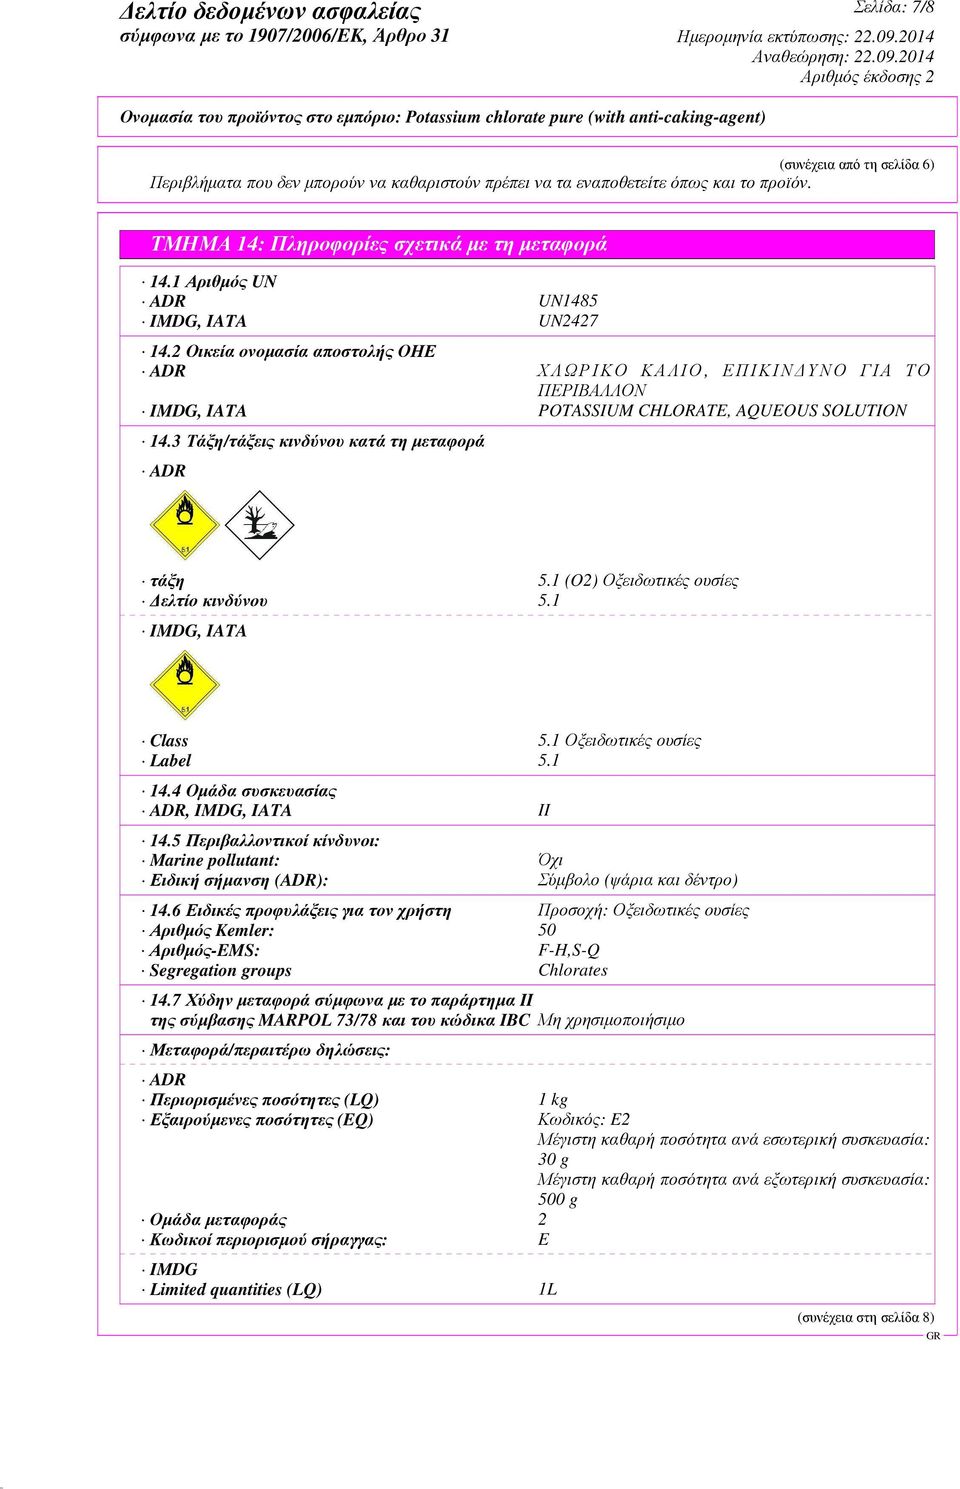 3 Τάξη/τάξεις κινδύνου κατά τη µεταφορά ADR τάξη 5.1 (O2) Οξειδωτικές ουσίες ελτίο κινδύνου 5.1 IMDG, IATA Class 5.1 Οξειδωτικές ουσίες Label 5.1 14.4 Οµάδα συσκευασίας ADR, IMDG, IATA II 14.